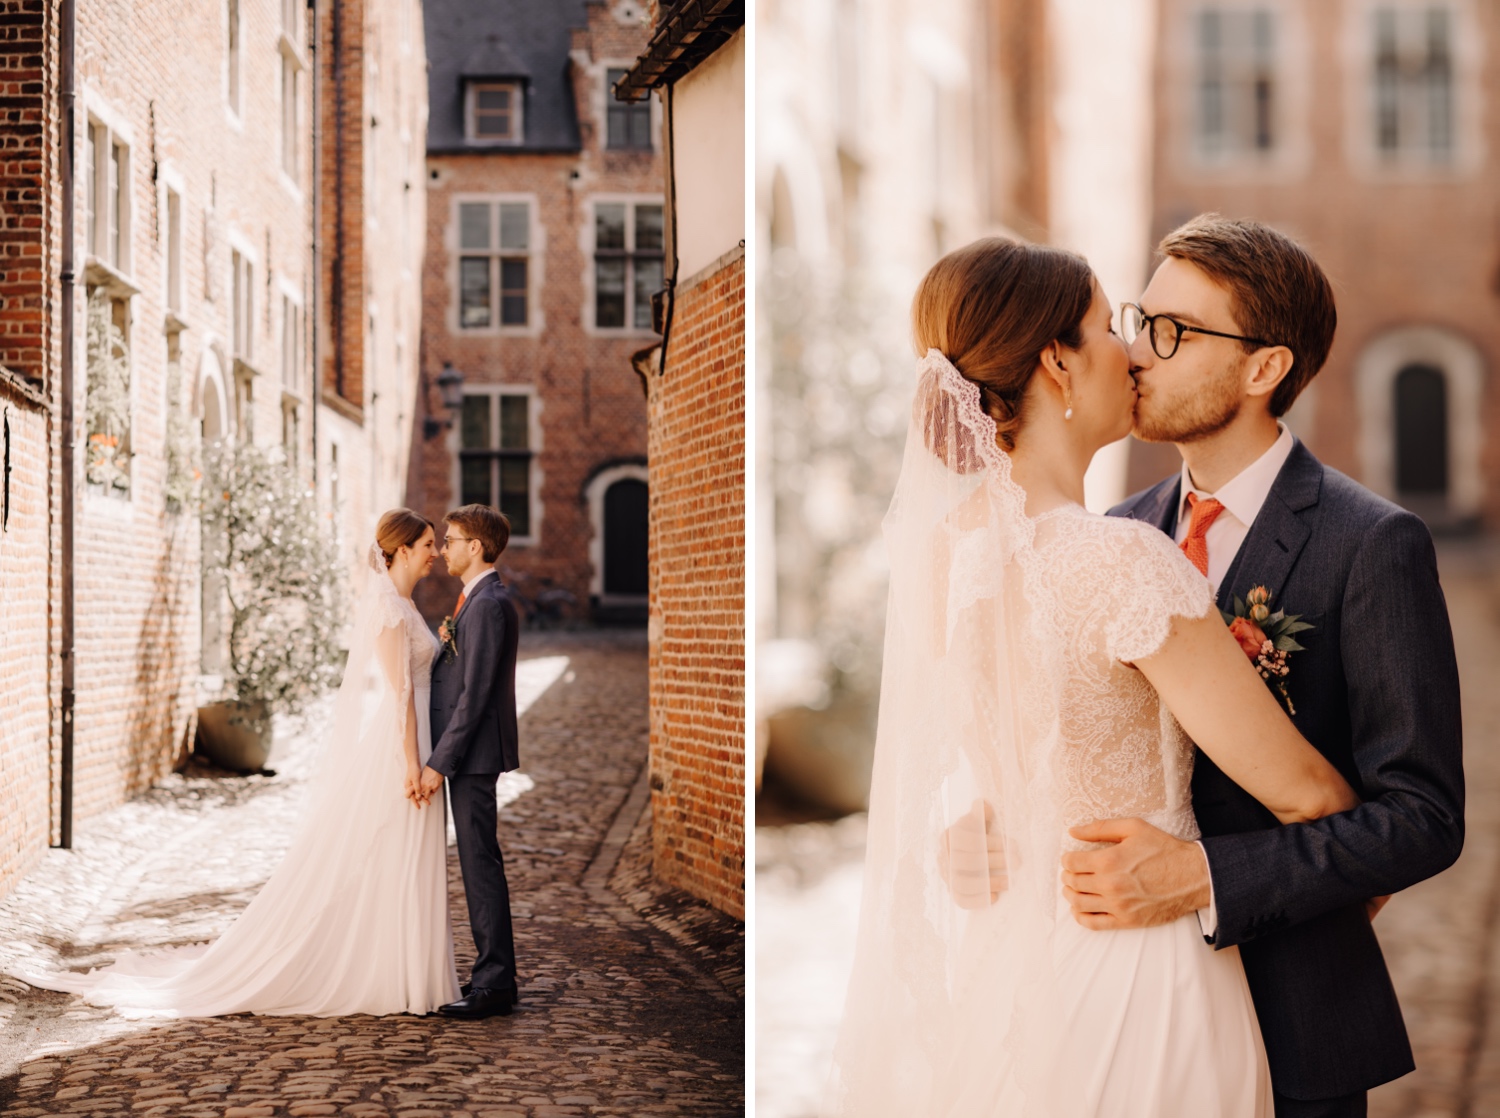 Huwelijksfotograaf Limburg - bruidspaar kust tijdens fotoshoot in begijnhof Leuven